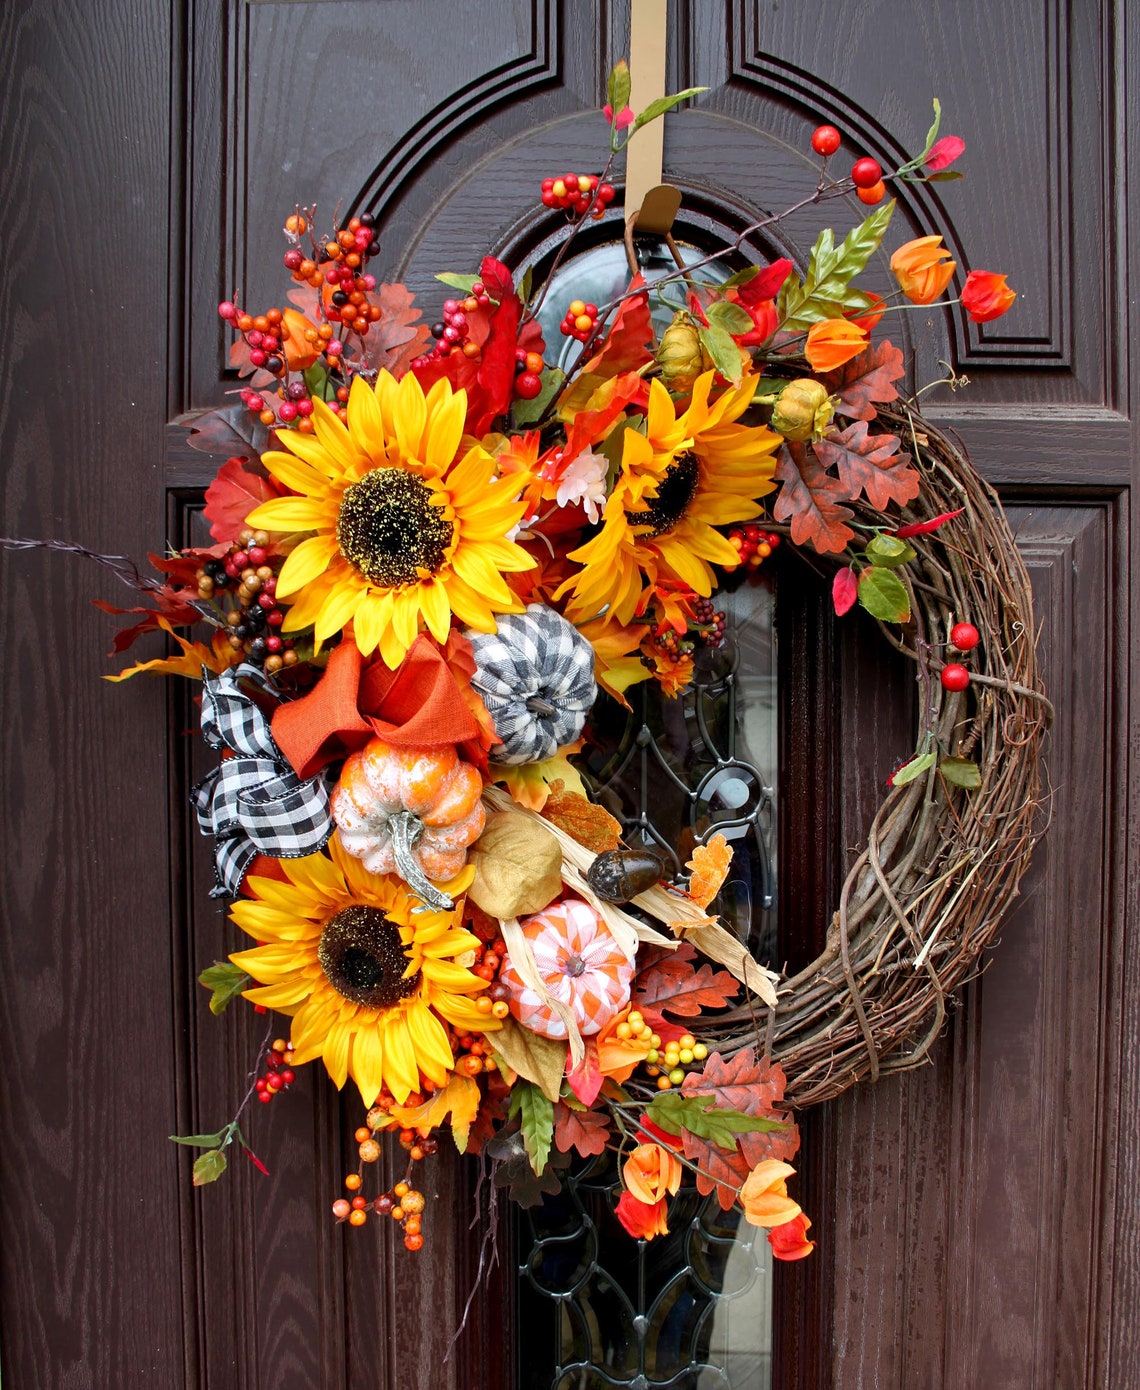 Farmhouse fall wreaths wreath for front door door hanger | Etsy